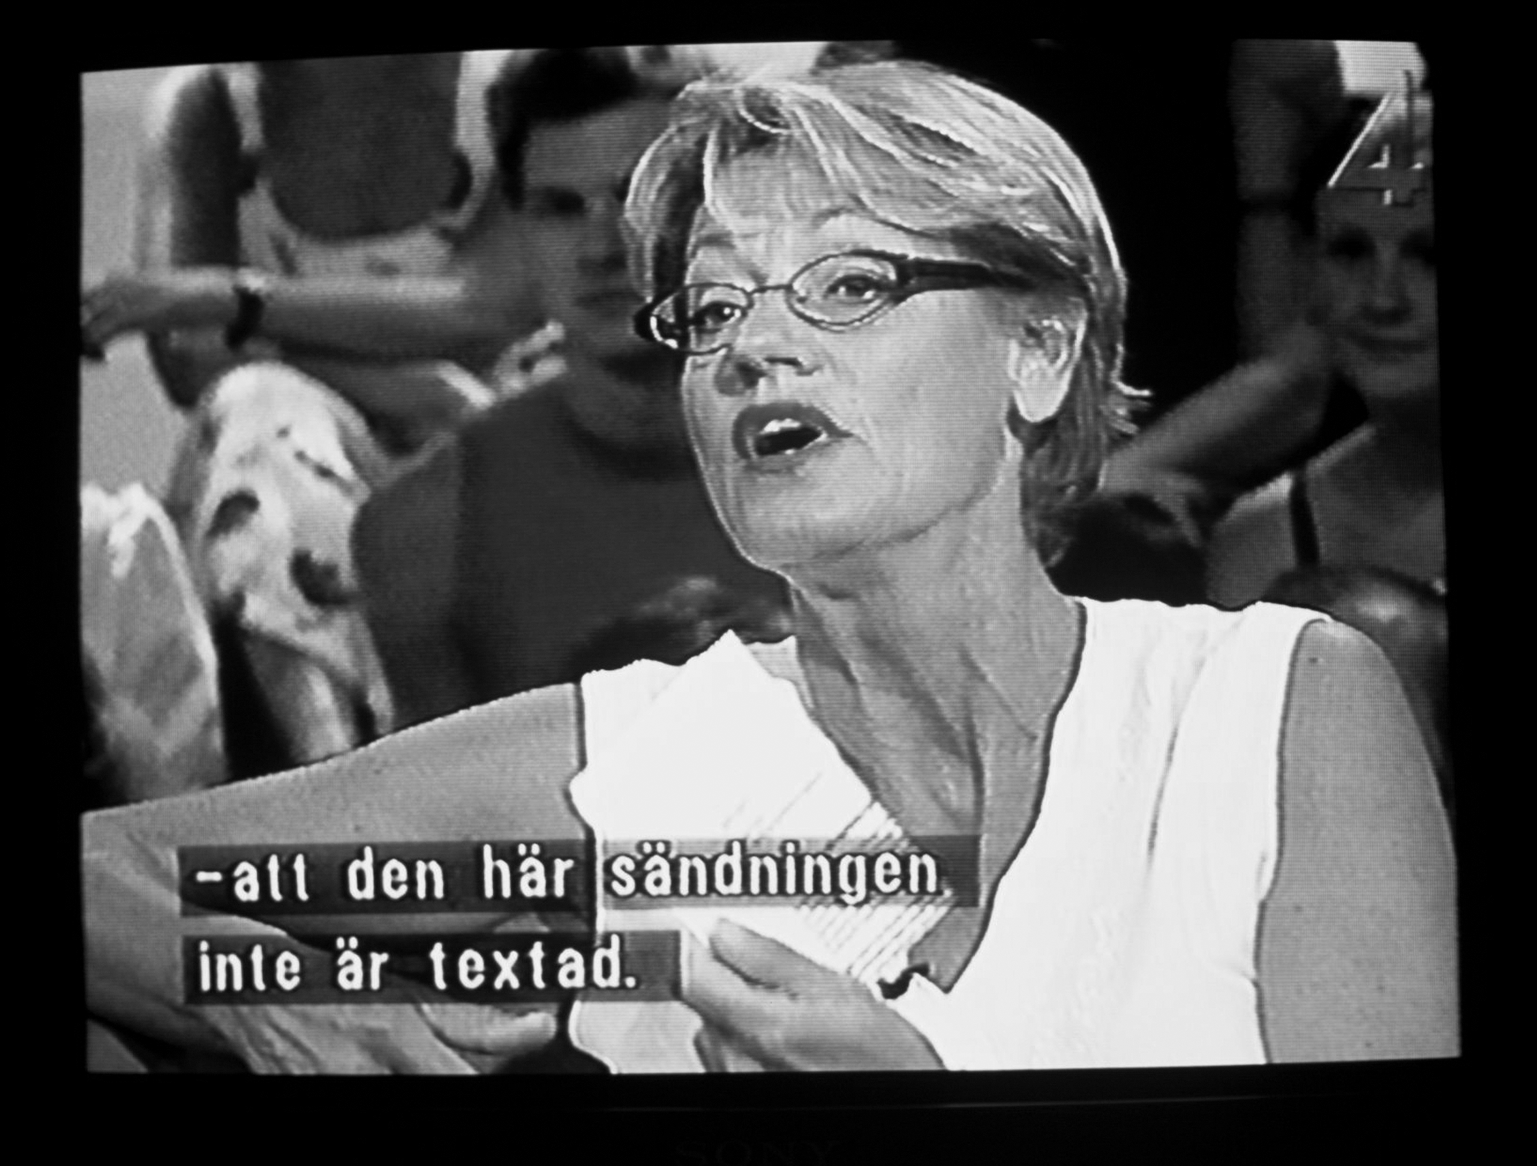 Svartvit bild på Gudrun Schyman i TV-ruta, med textremsa: "att den här sändningen inte är textad "